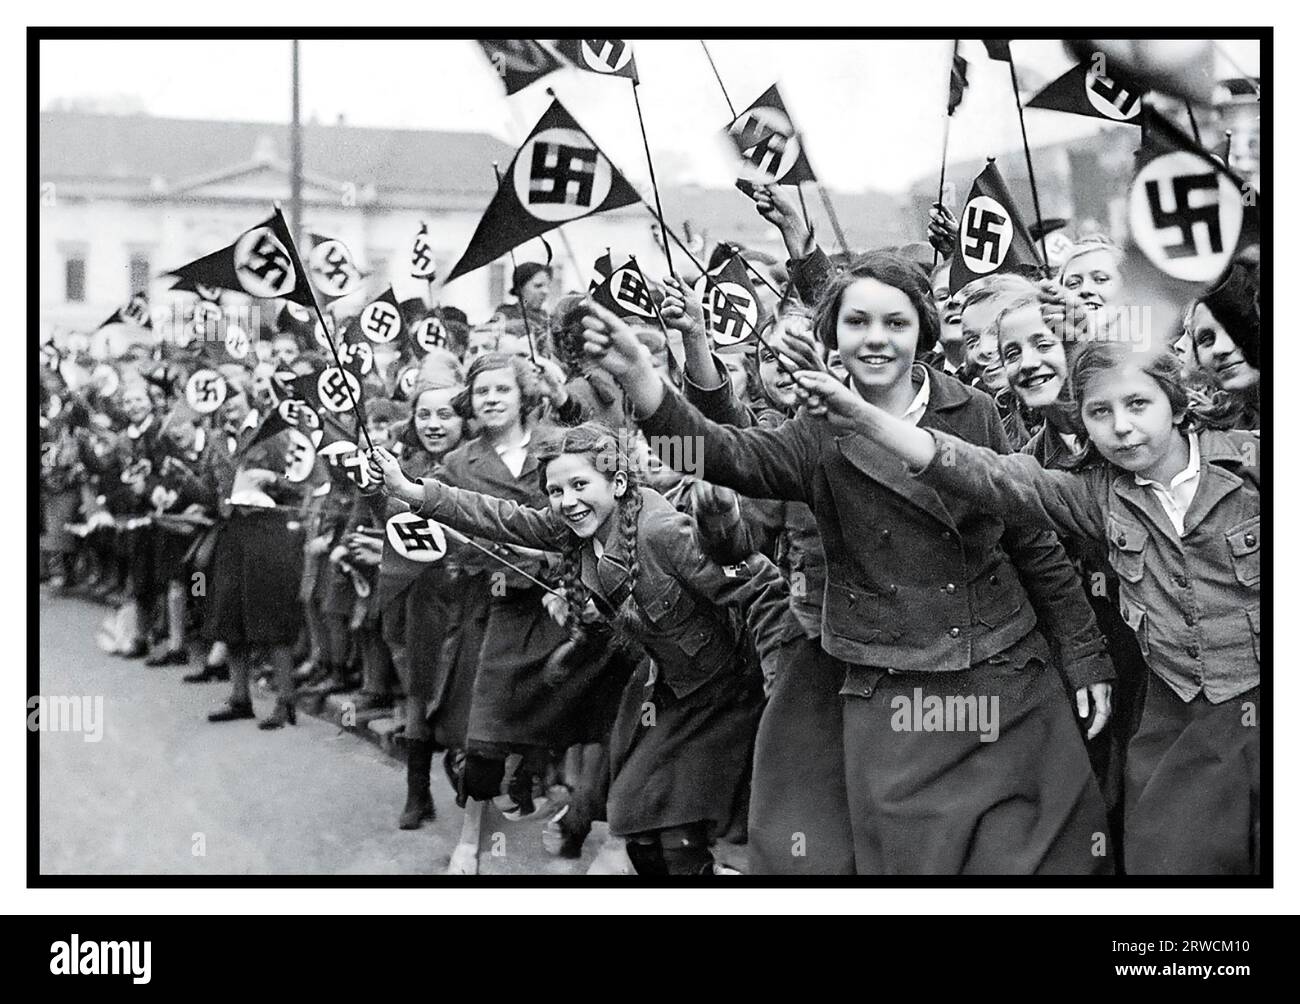 La Lega nazista delle ragazze tedesche di Anschluss 1930 sventola bandiere naziste a sostegno e per congratularsi con l'annessione tedesca dell'Austria. Vienna, Austria, marzo 1938. L'esercito del leader nazista Adolf Hitler entrò nei confini della città di Vienna, in Austria, il 14 marzo 1938 per annettere l'Austria Anschluss Foto Stock